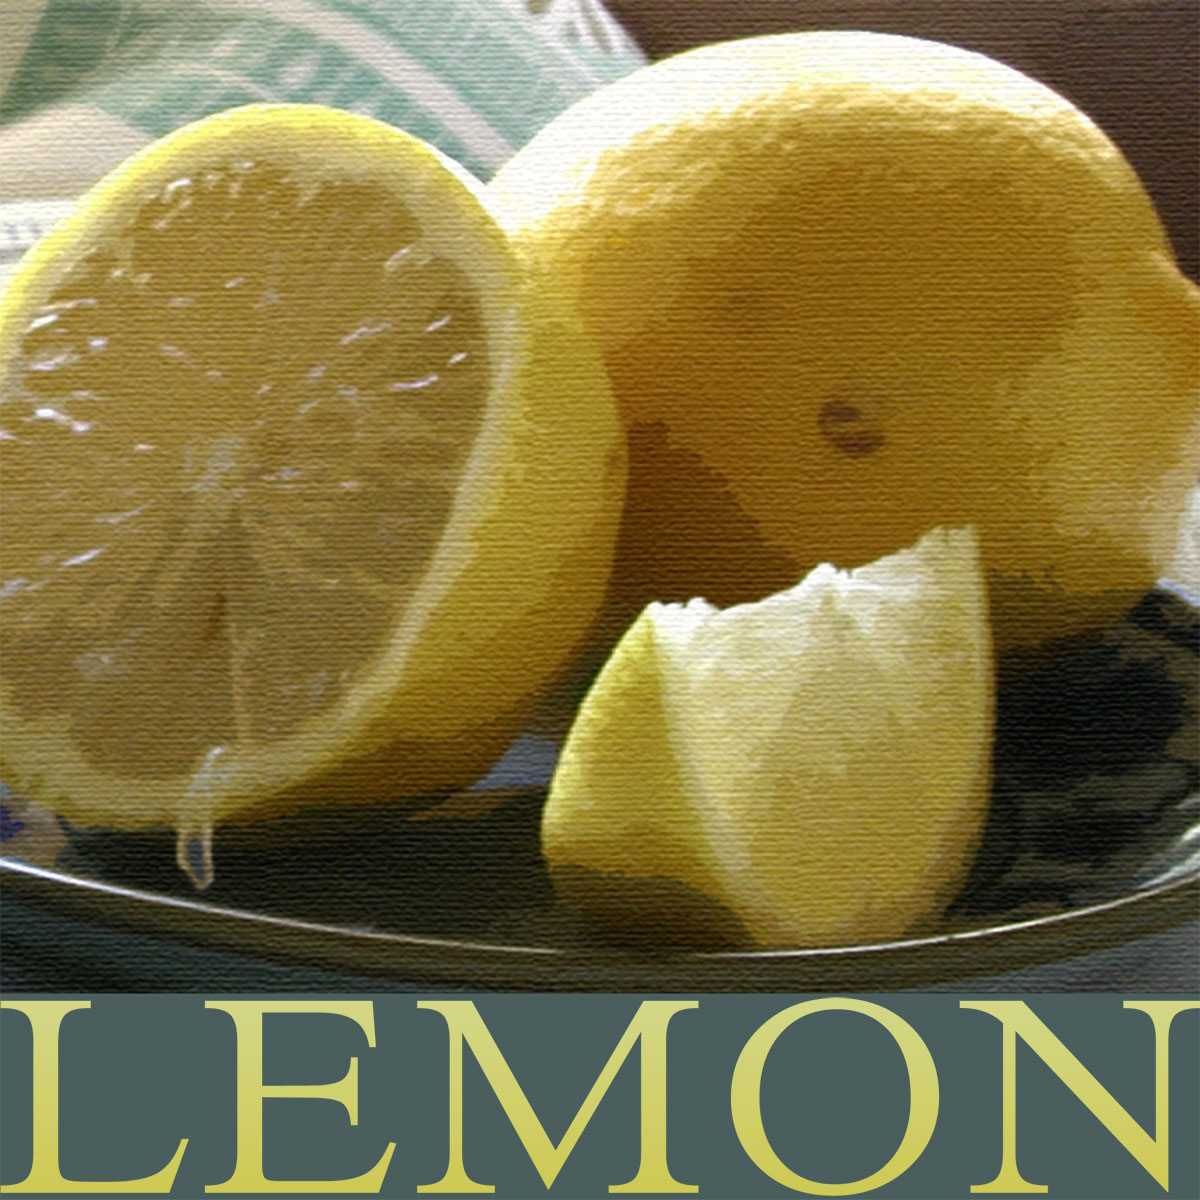 [Lemon-maquette.jpg]